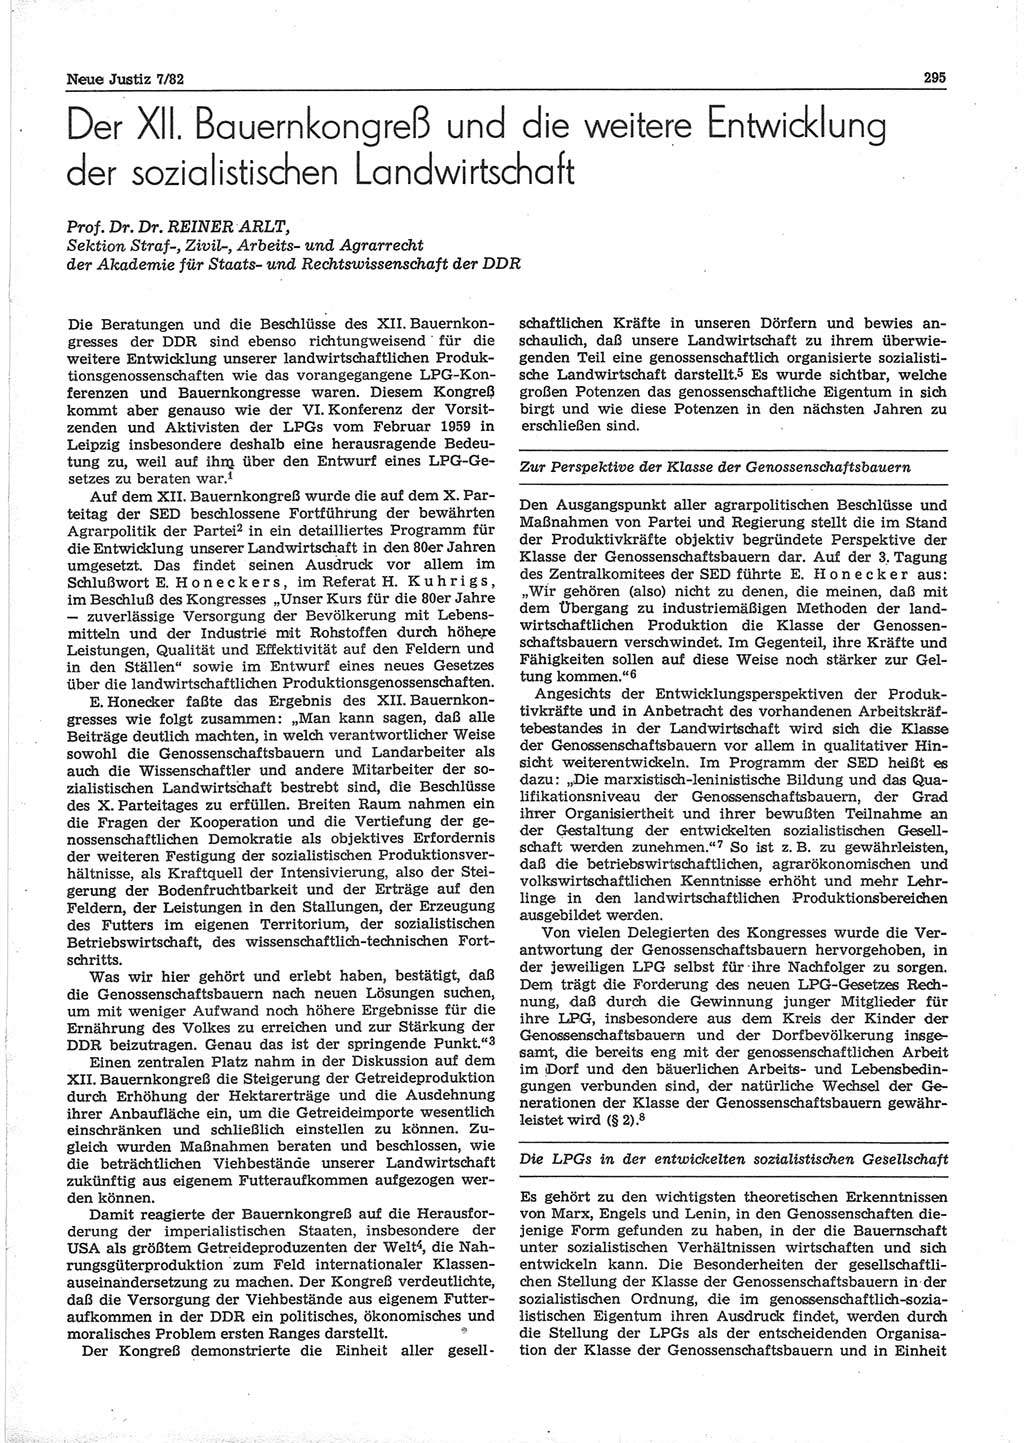 Neue Justiz (NJ), Zeitschrift für sozialistisches Recht und Gesetzlichkeit [Deutsche Demokratische Republik (DDR)], 36. Jahrgang 1982, Seite 295 (NJ DDR 1982, S. 295)